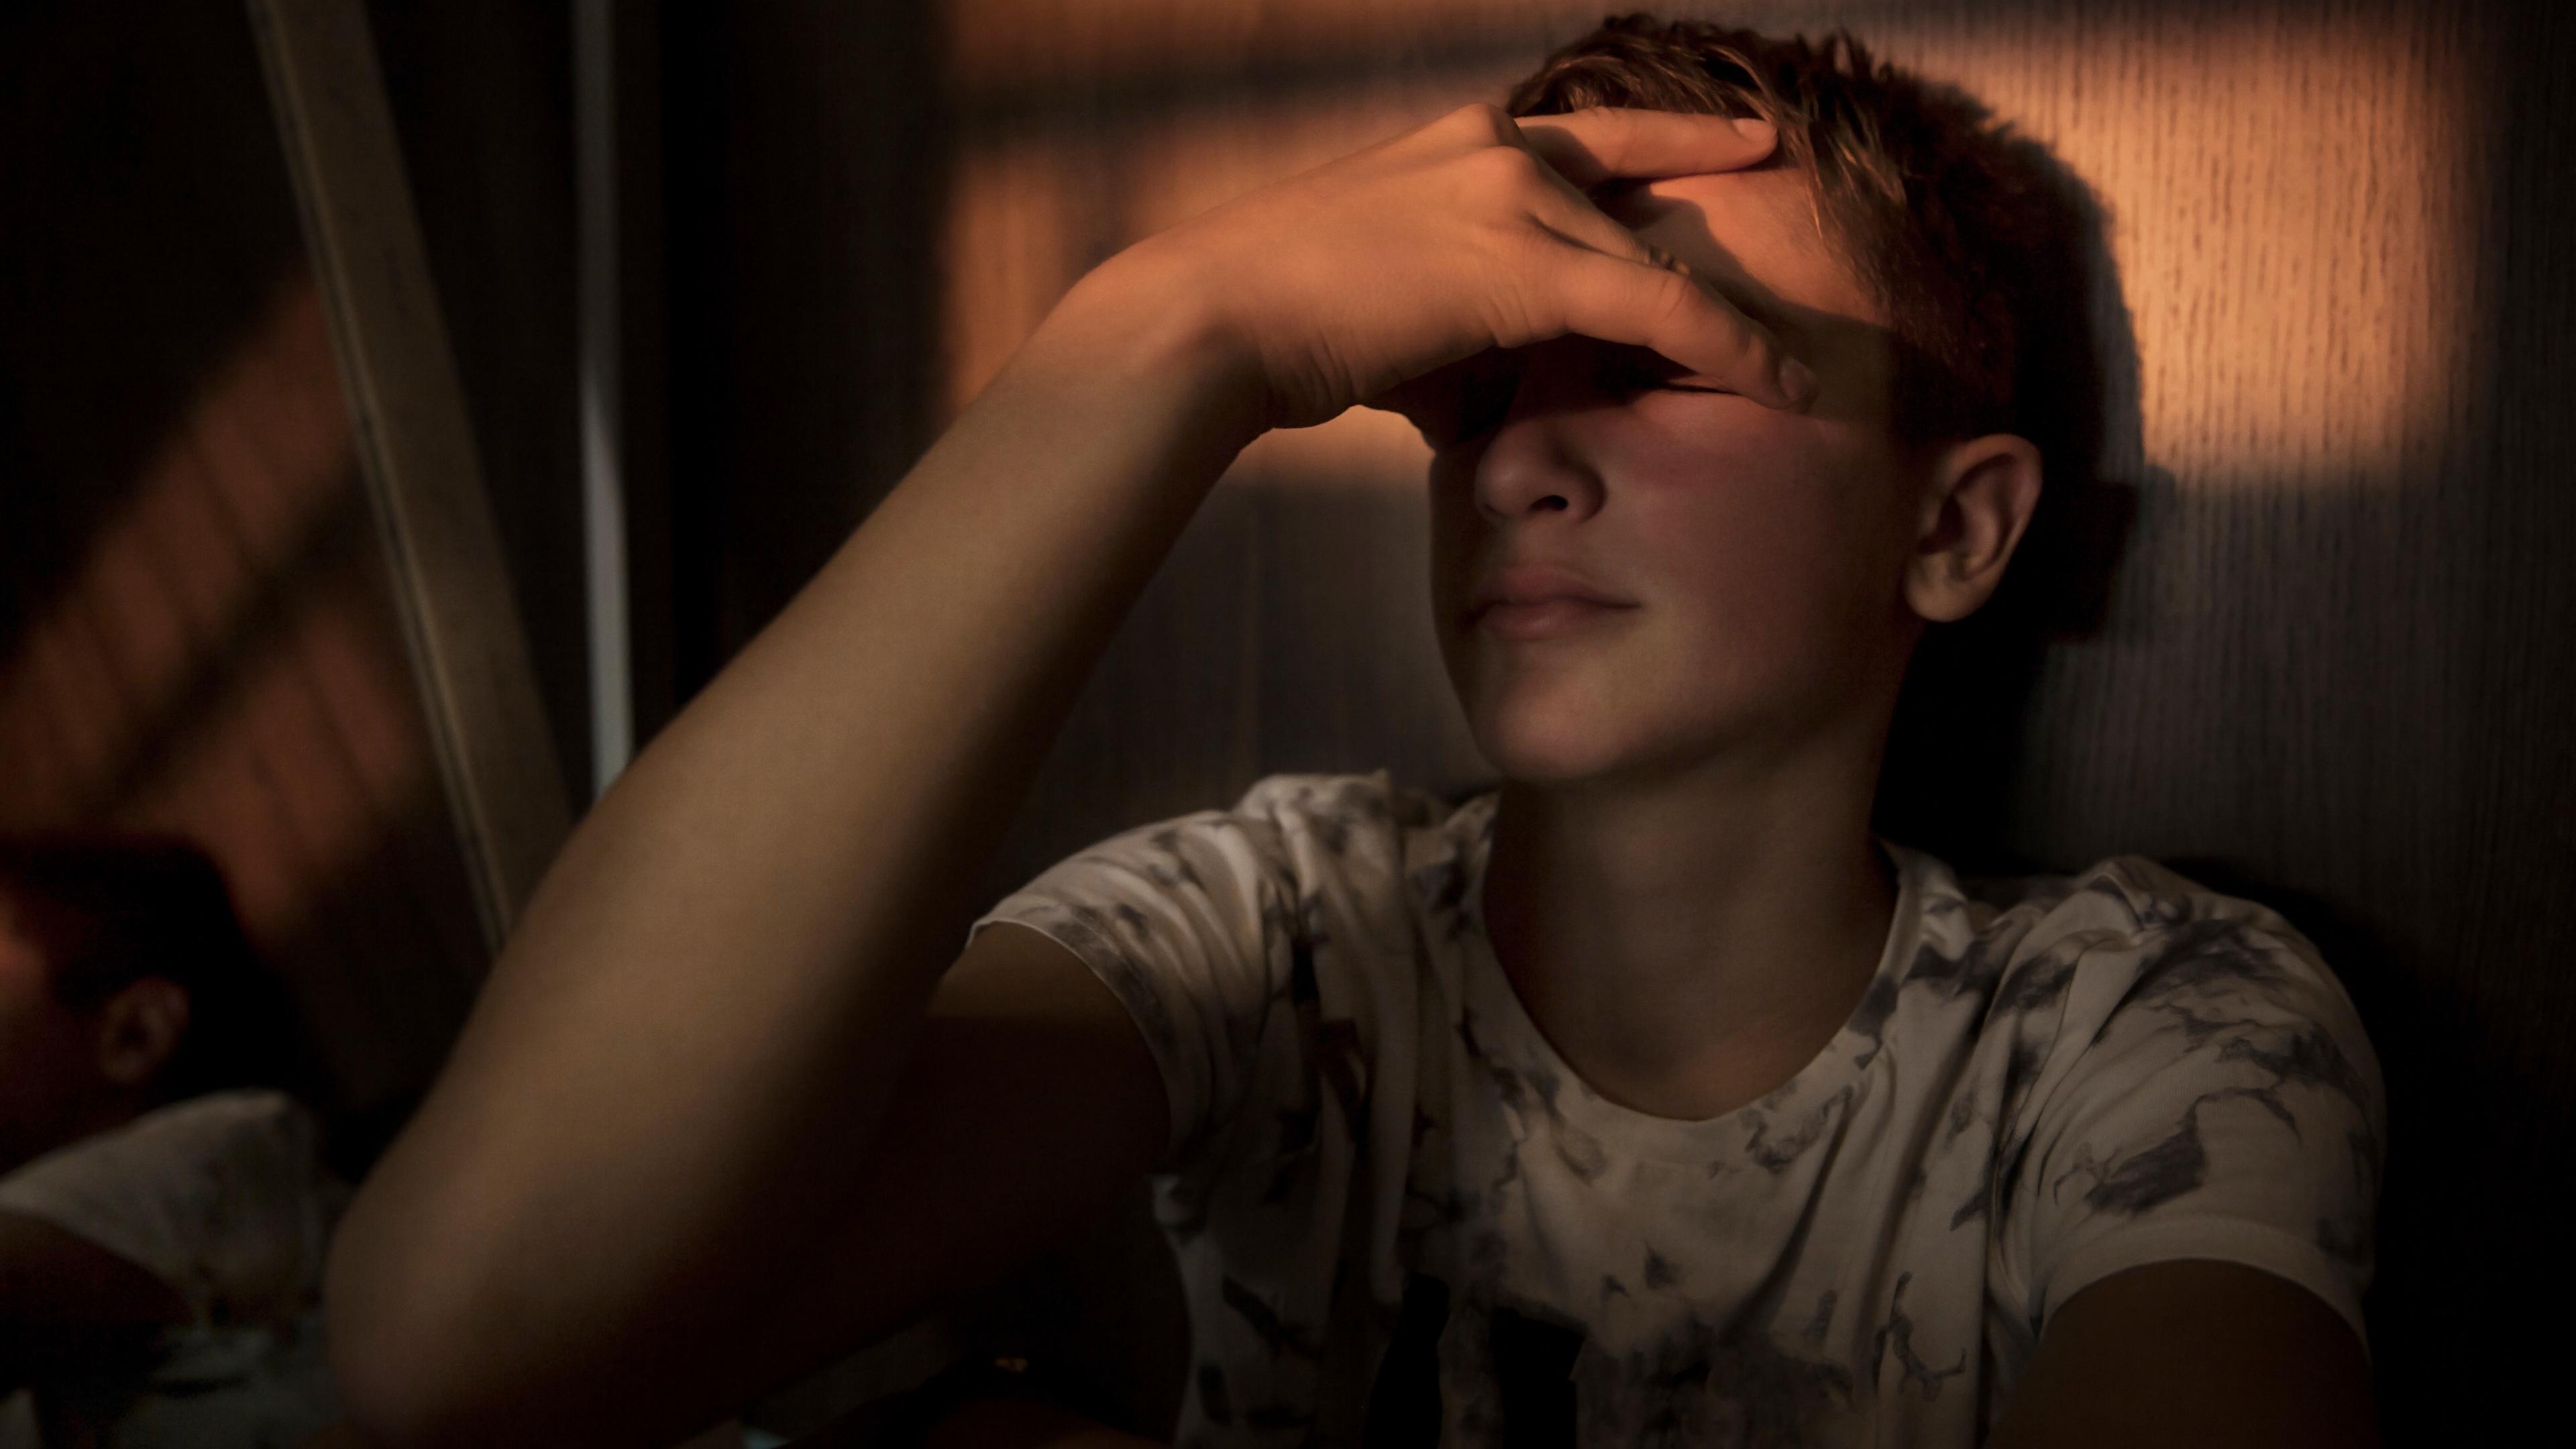 En dreng sidder i svagt sollys op ad en væg inden for. Han sidder med lukkede øjne og holder hånden op foran øjnene. Billedet skal forestille drengen, der er frustreret over sin ludomani.